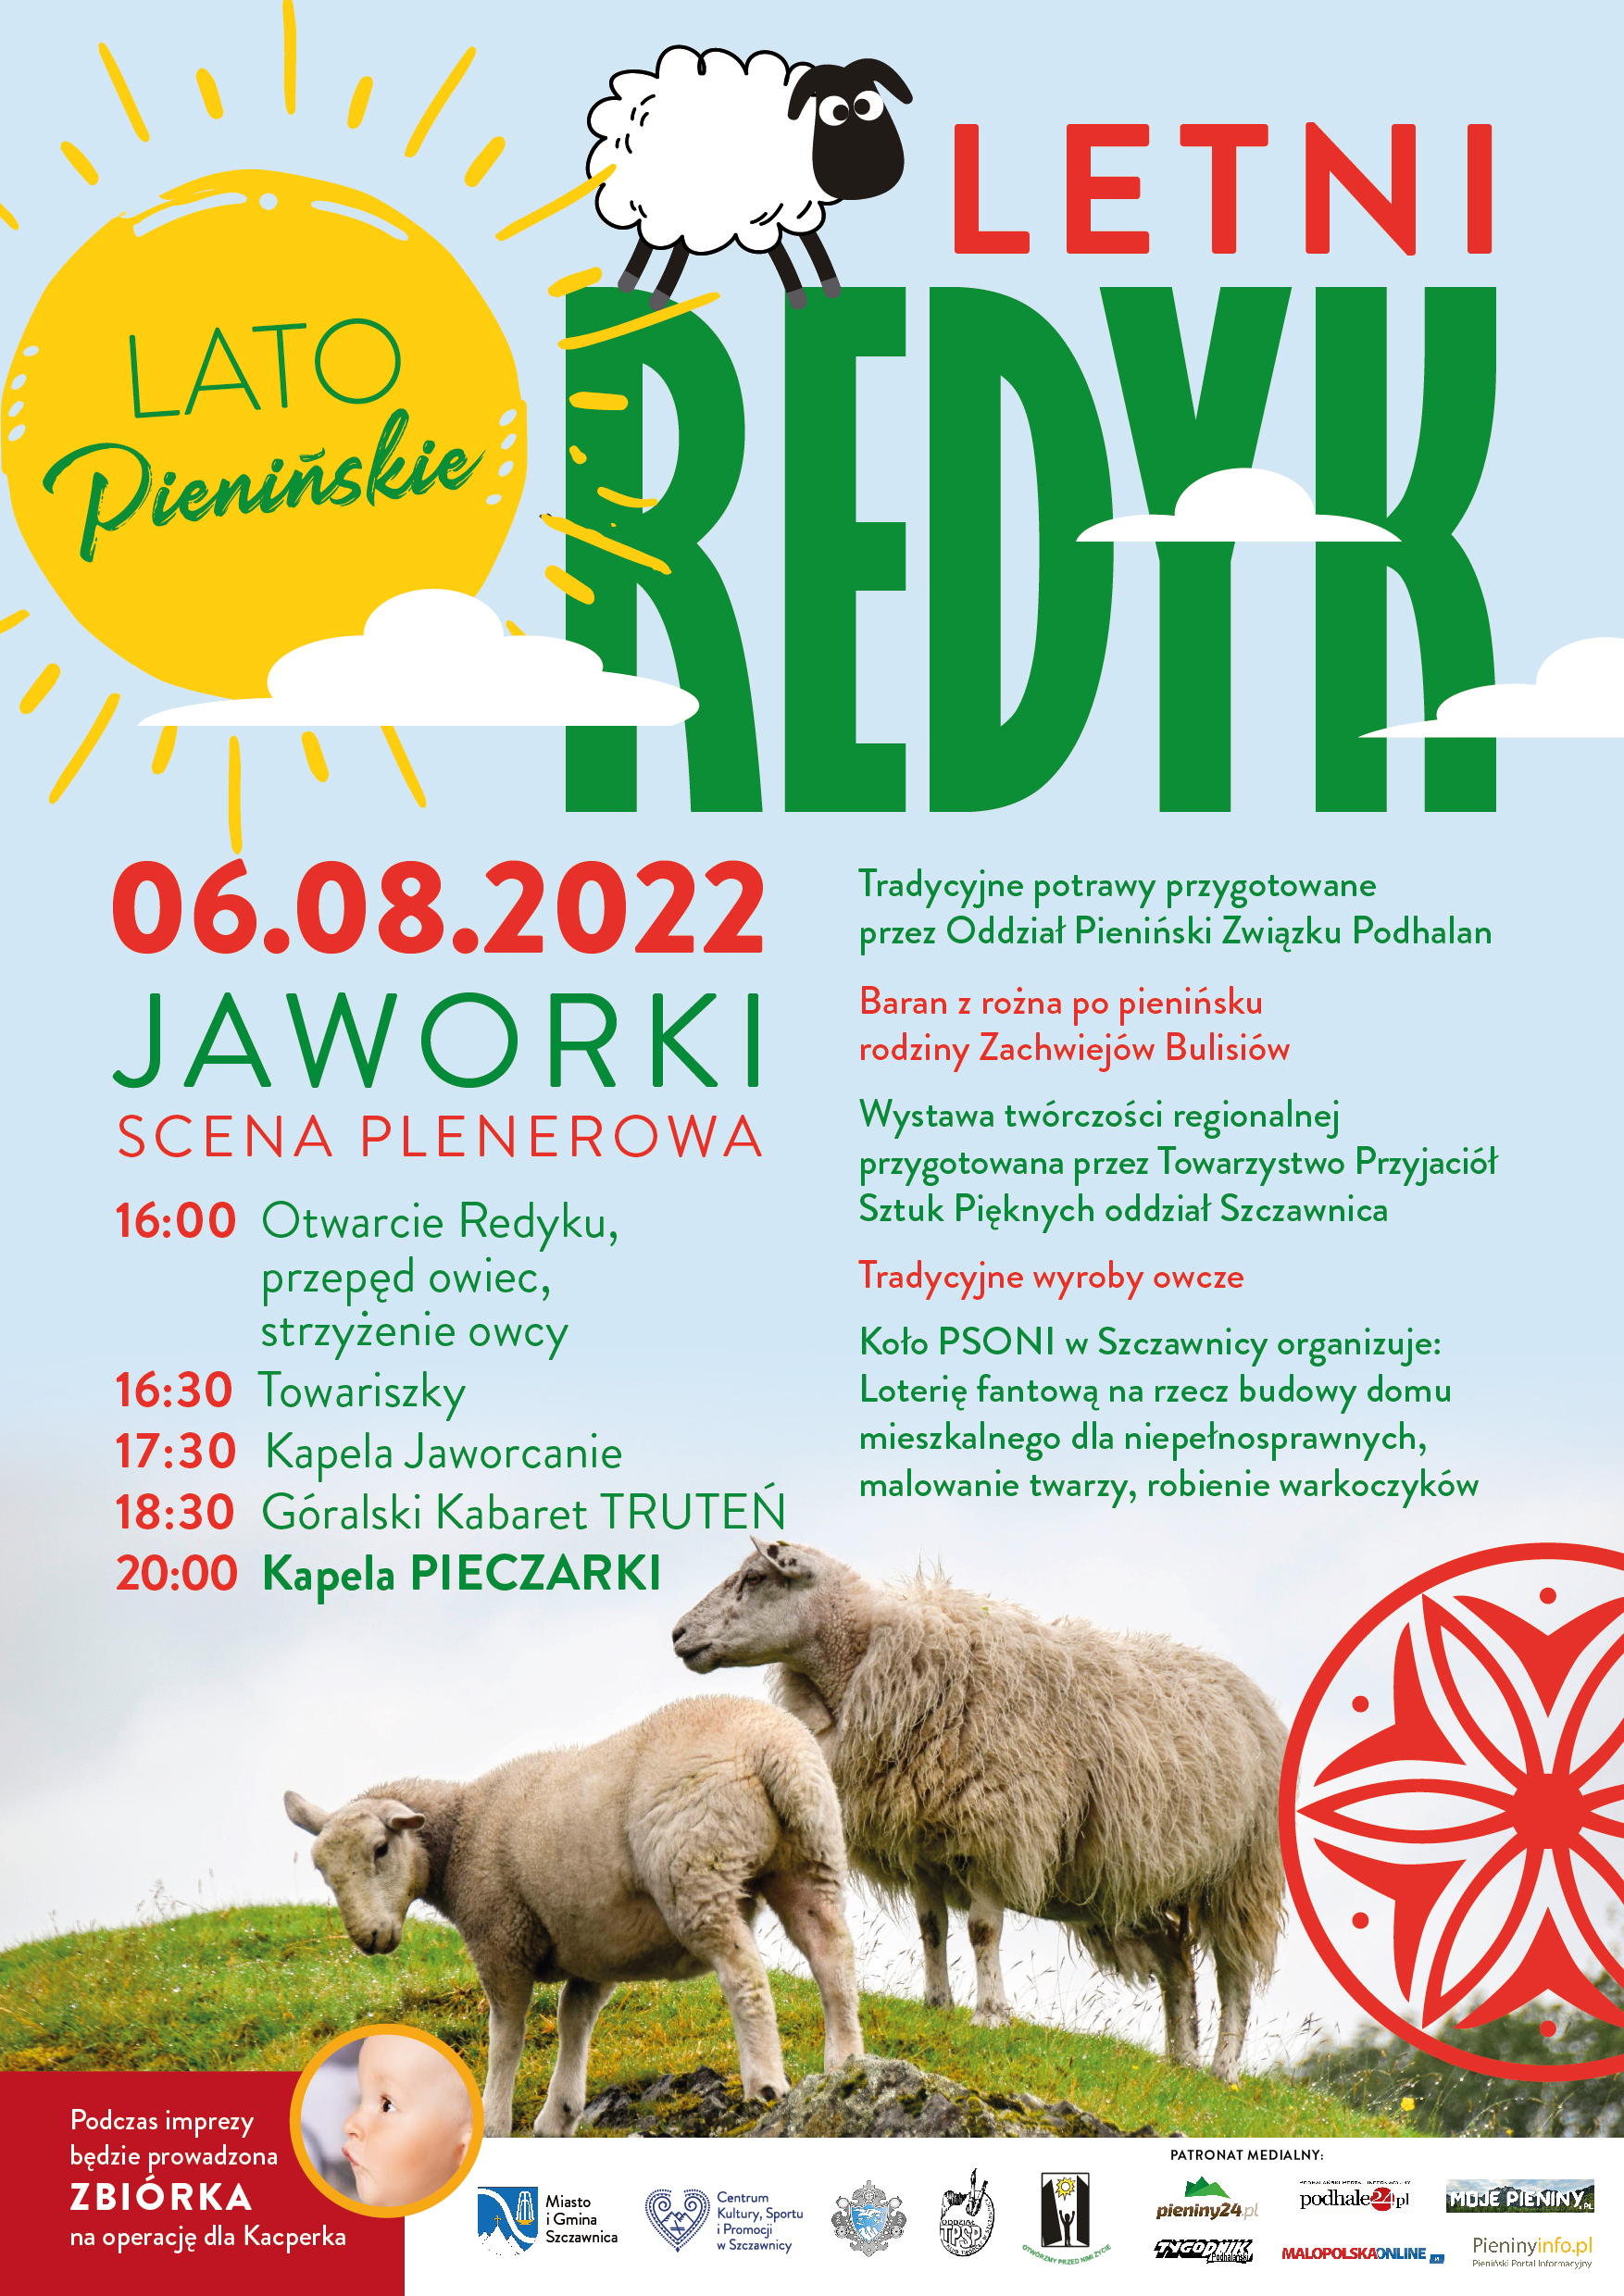 Plakat informujący o Letnim Redyku mającym się odbywać 06.08.2022.